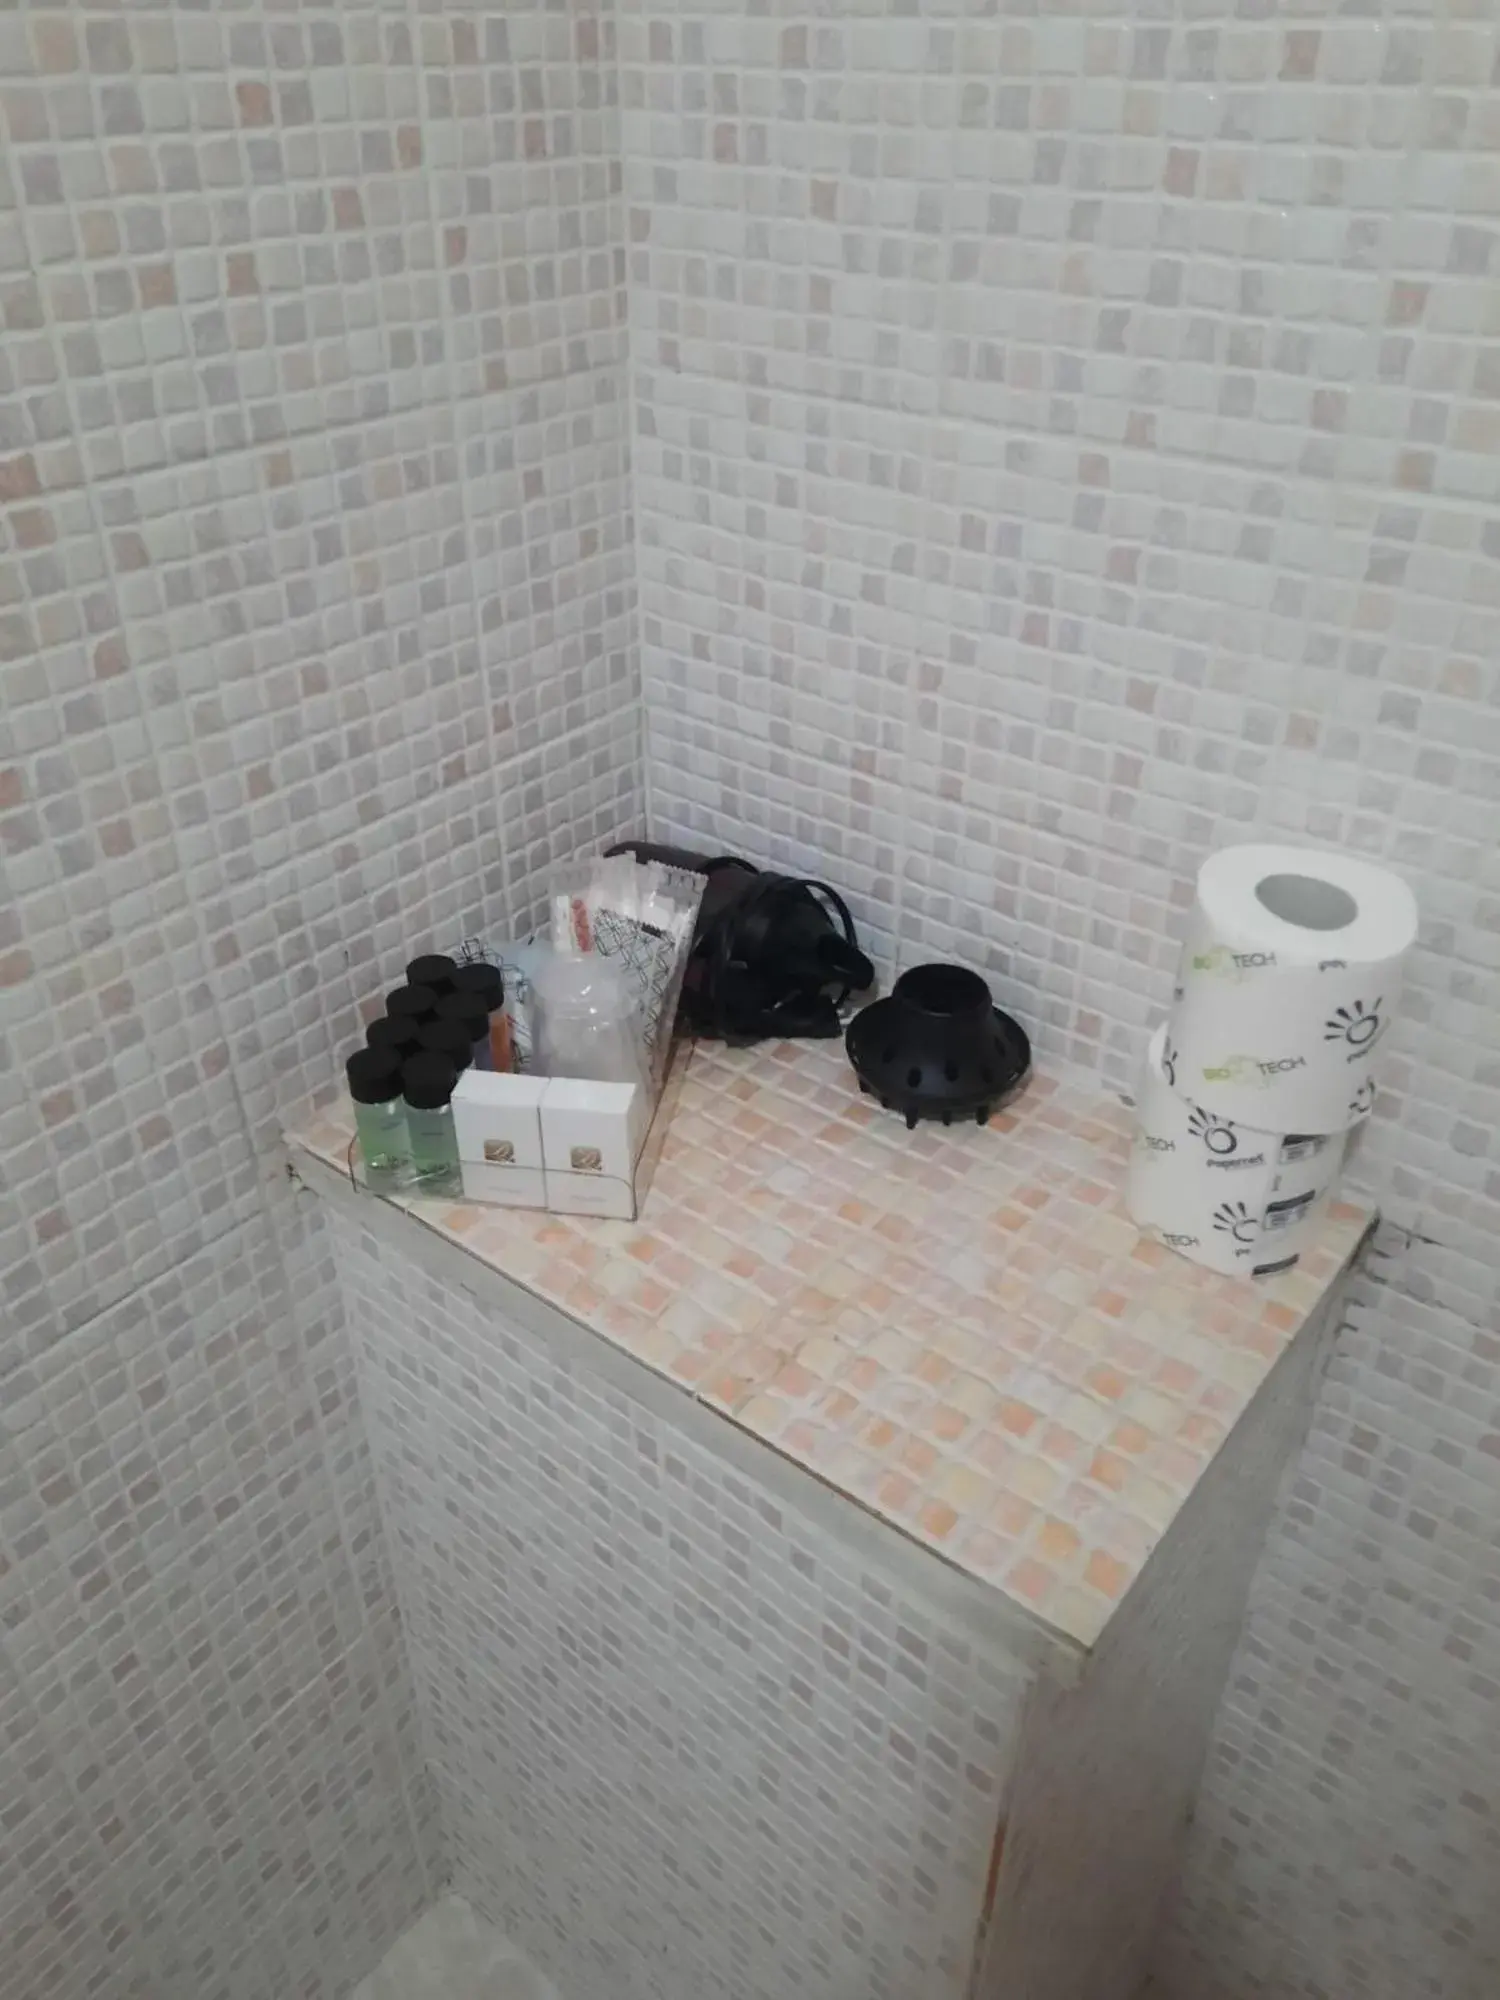 Bathroom in Hotel Alexis